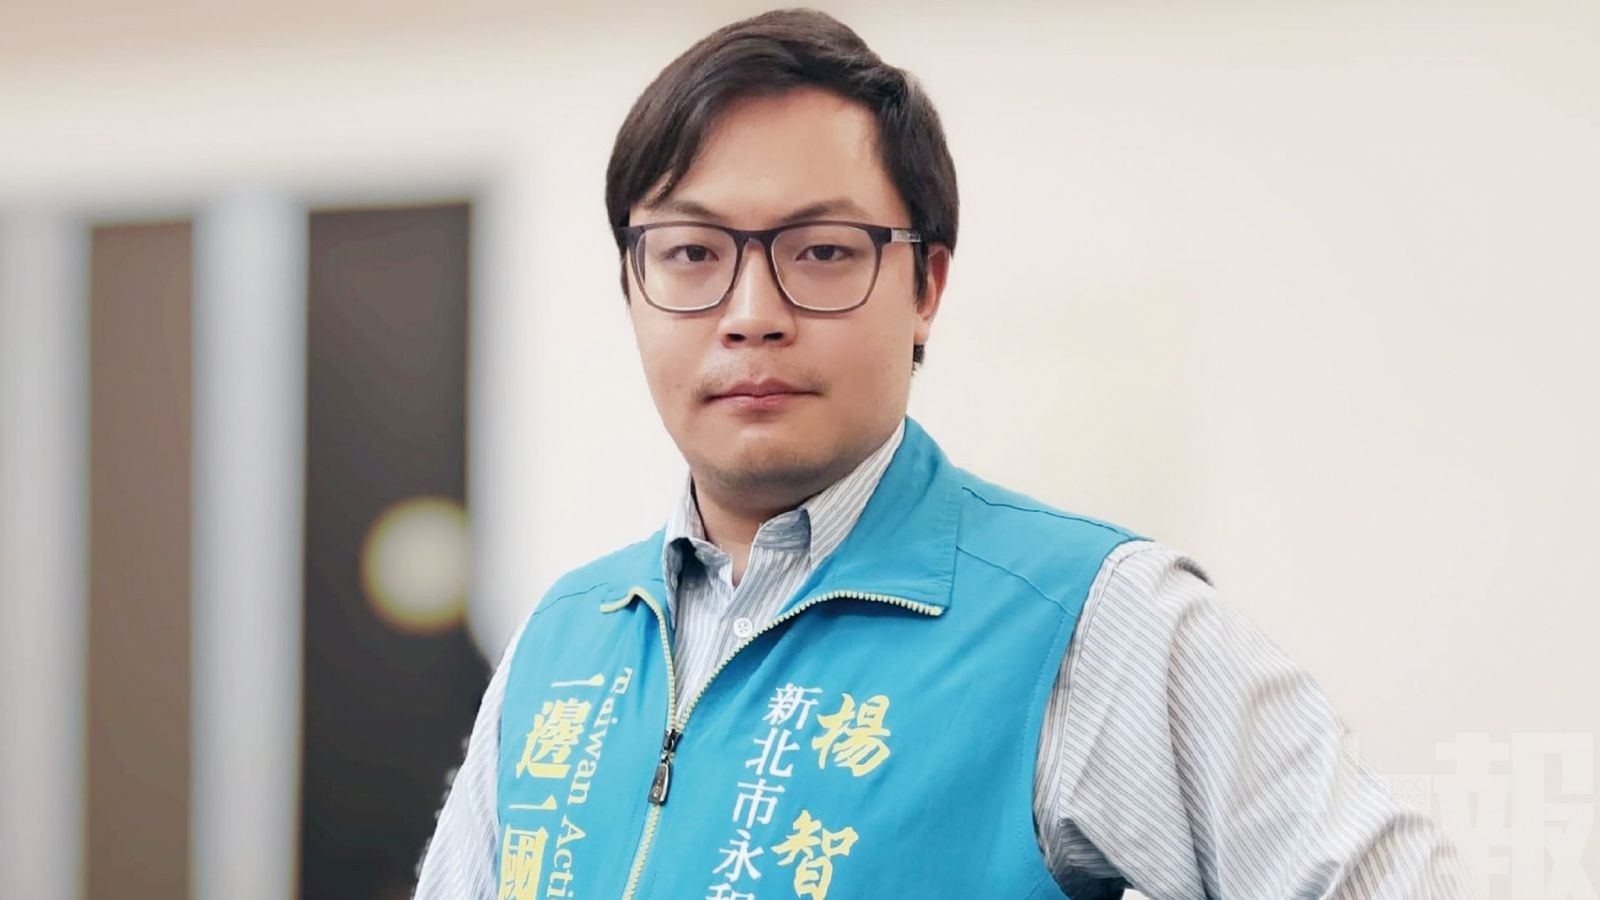 「台灣民族黨」副主席楊智淵遭批捕